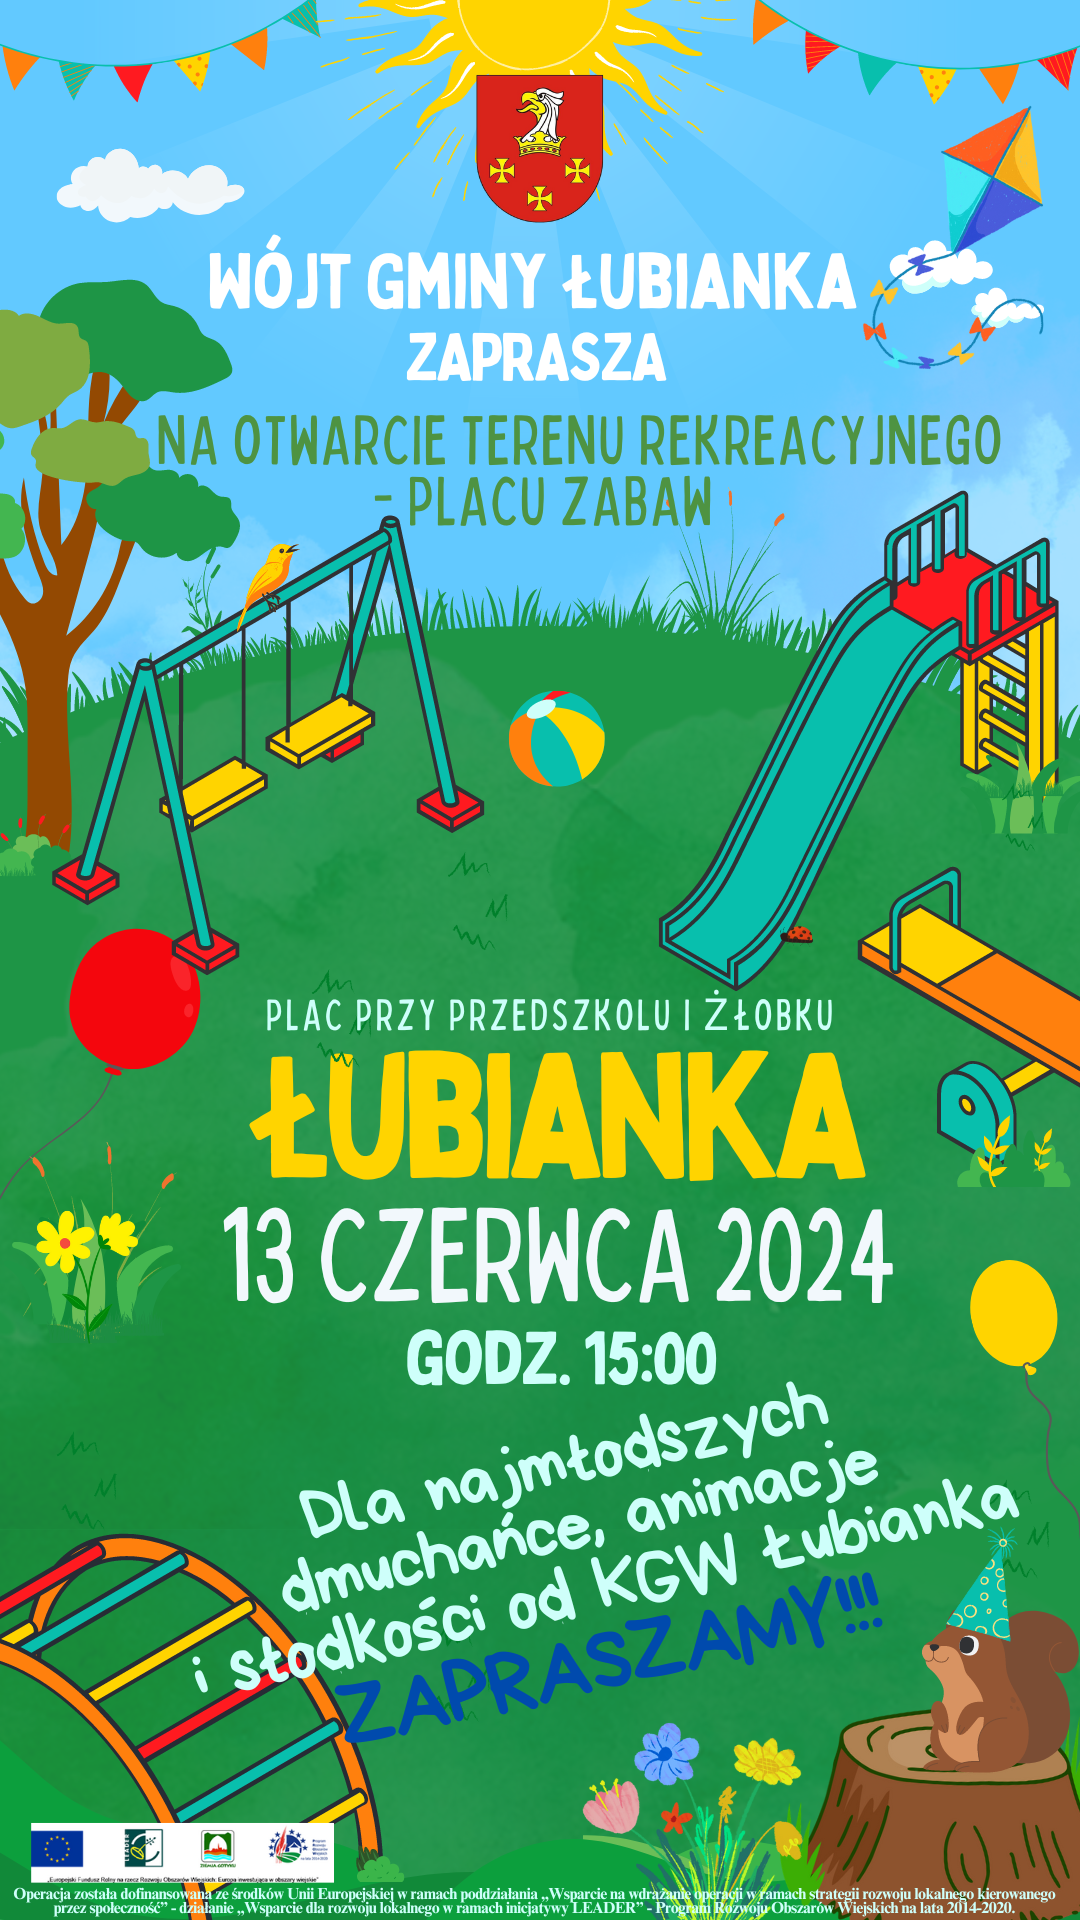 Zaproszenie - otwarcie terenu rekreacyjnego w Łubiance